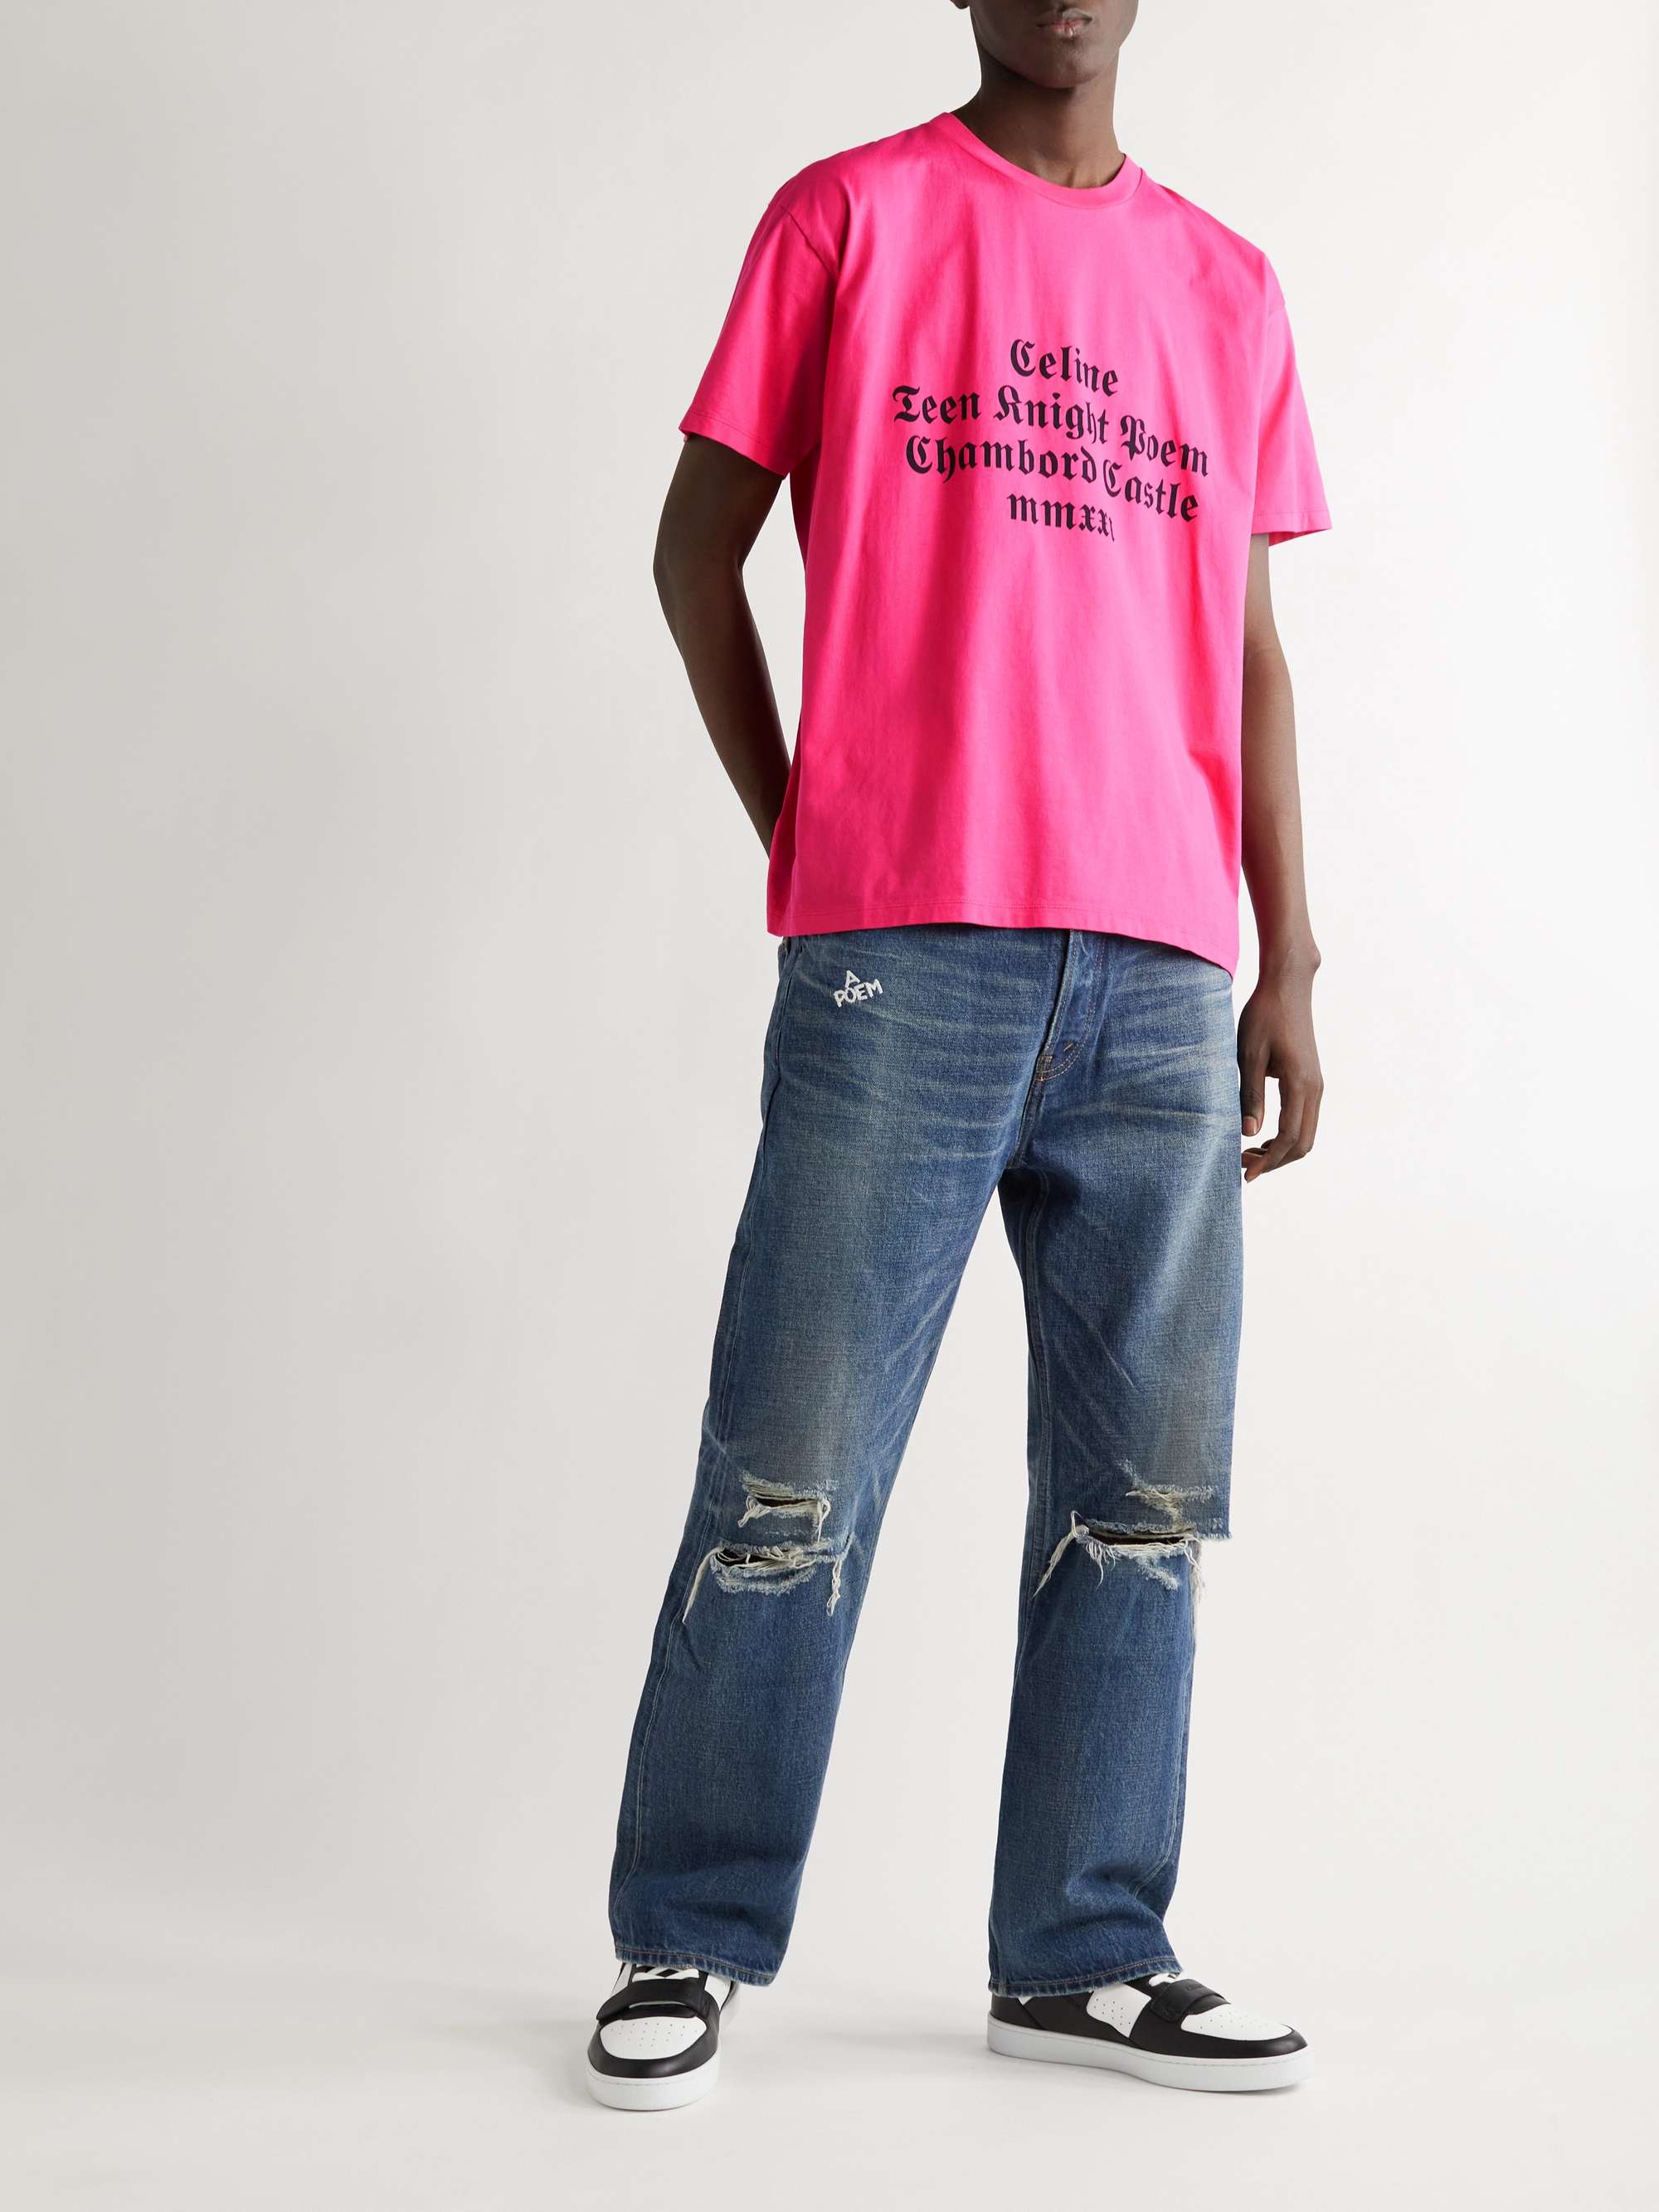 CELINE Printed Cotton-Jersey T-Shirt for Men | MR PORTER